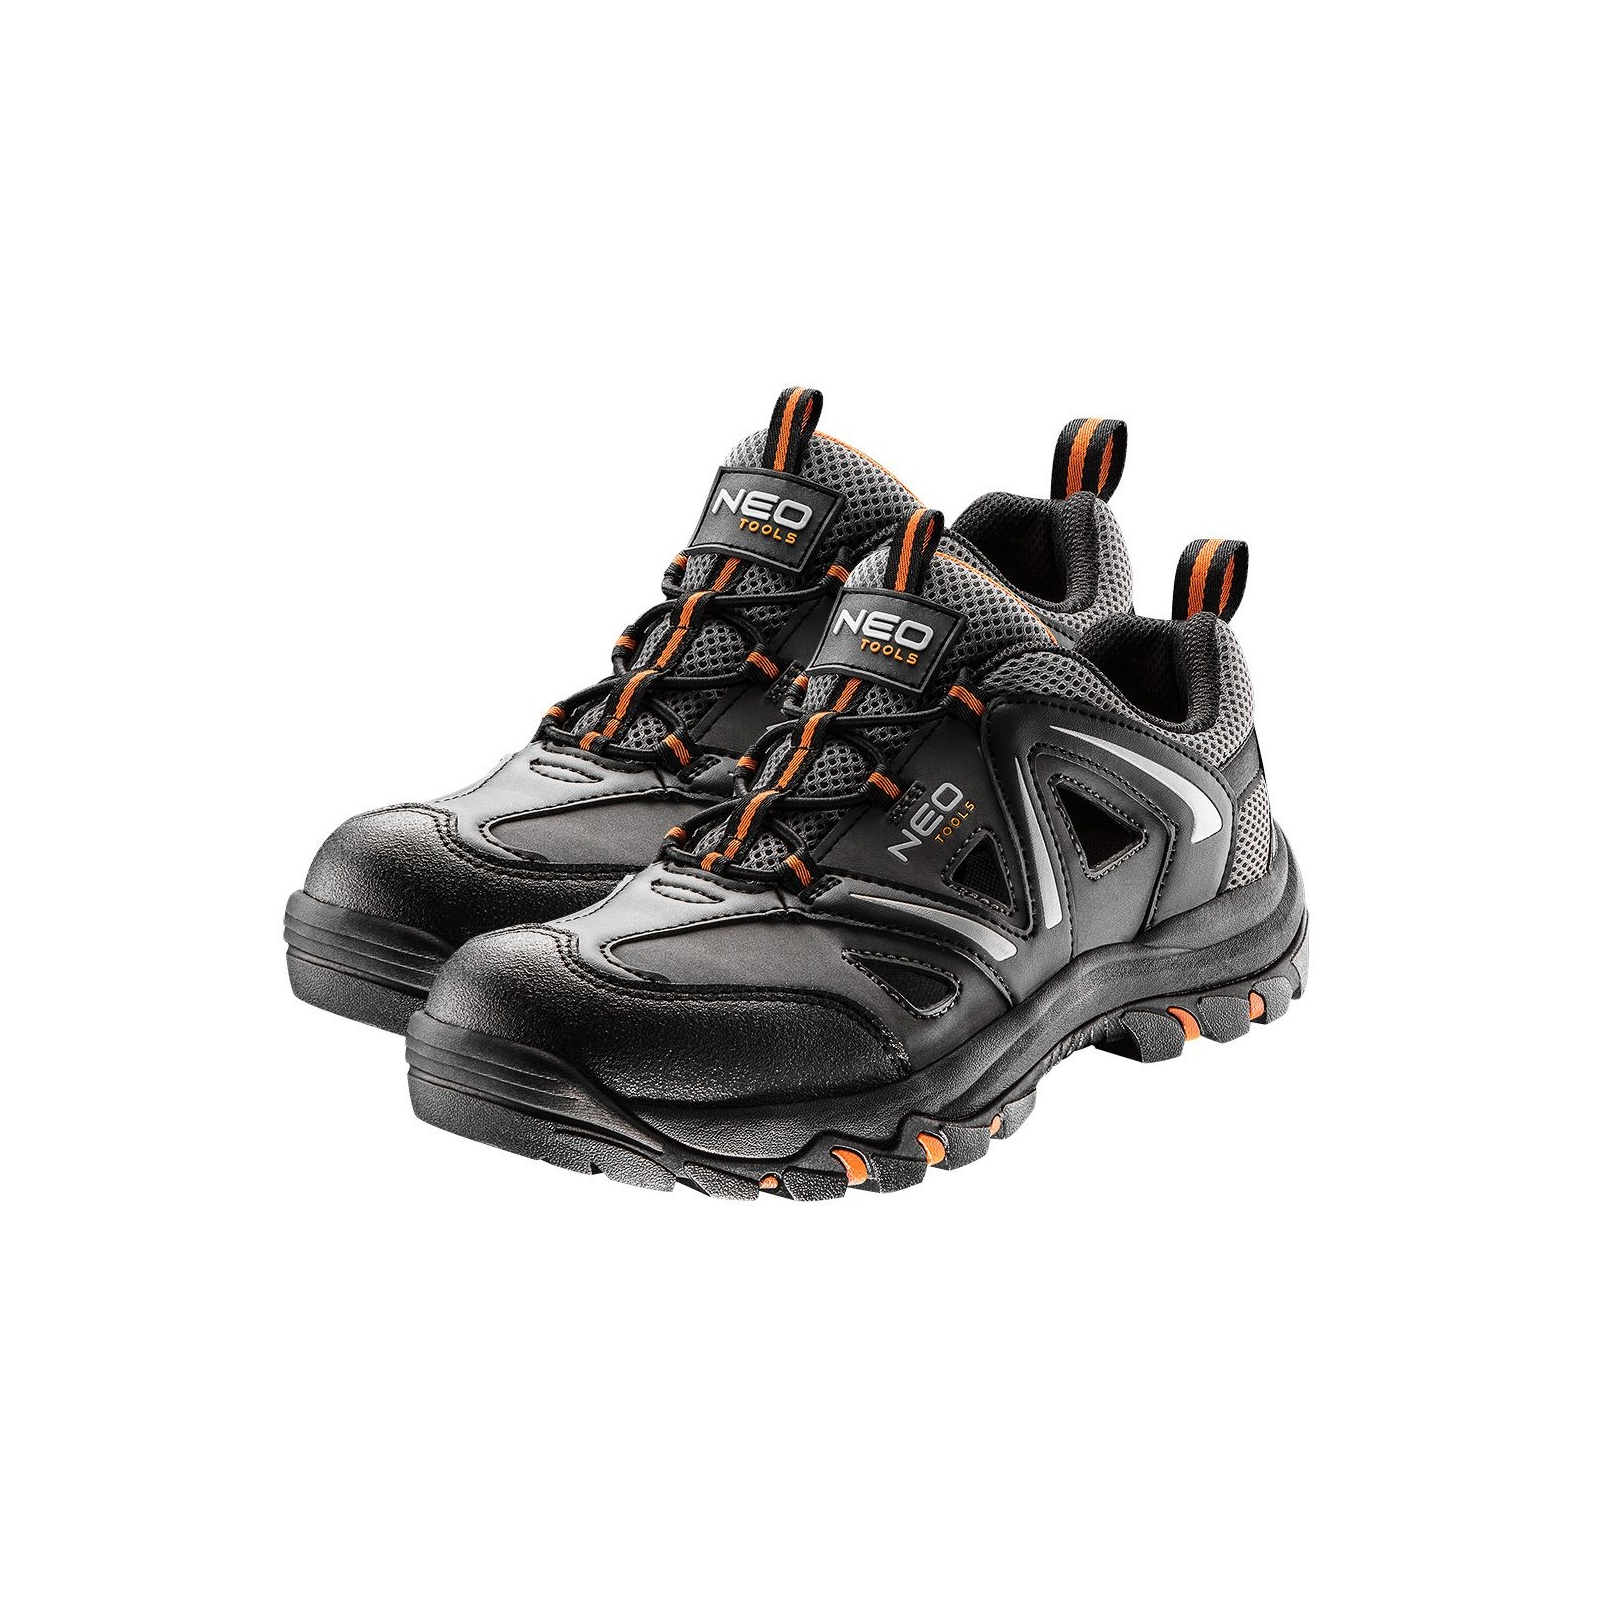 Ботинки рабочие Neo Tools кроссовки дышащие, подошва EVA, класс защиты OB, SRA, р.44 (82-725)